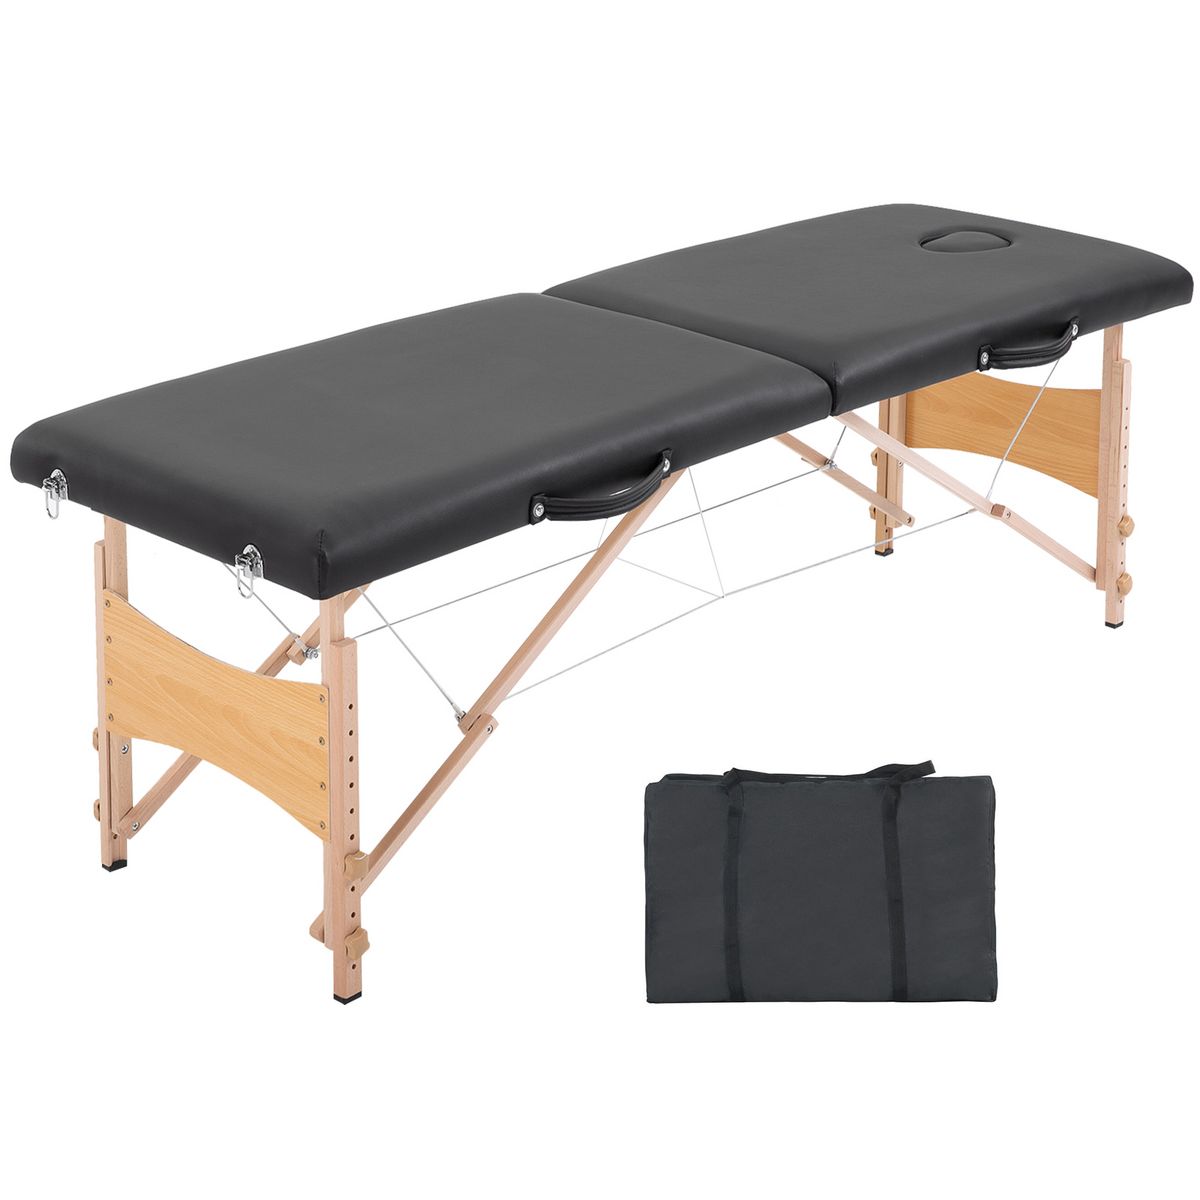 HOMCOM HOMCOM Table de massage pliante lit table de beauté 2 zones portable sac de tranport inclus hauteur réglable dim. 186L x 60l x 58-81H cm bois massif revêtement synthétique noir